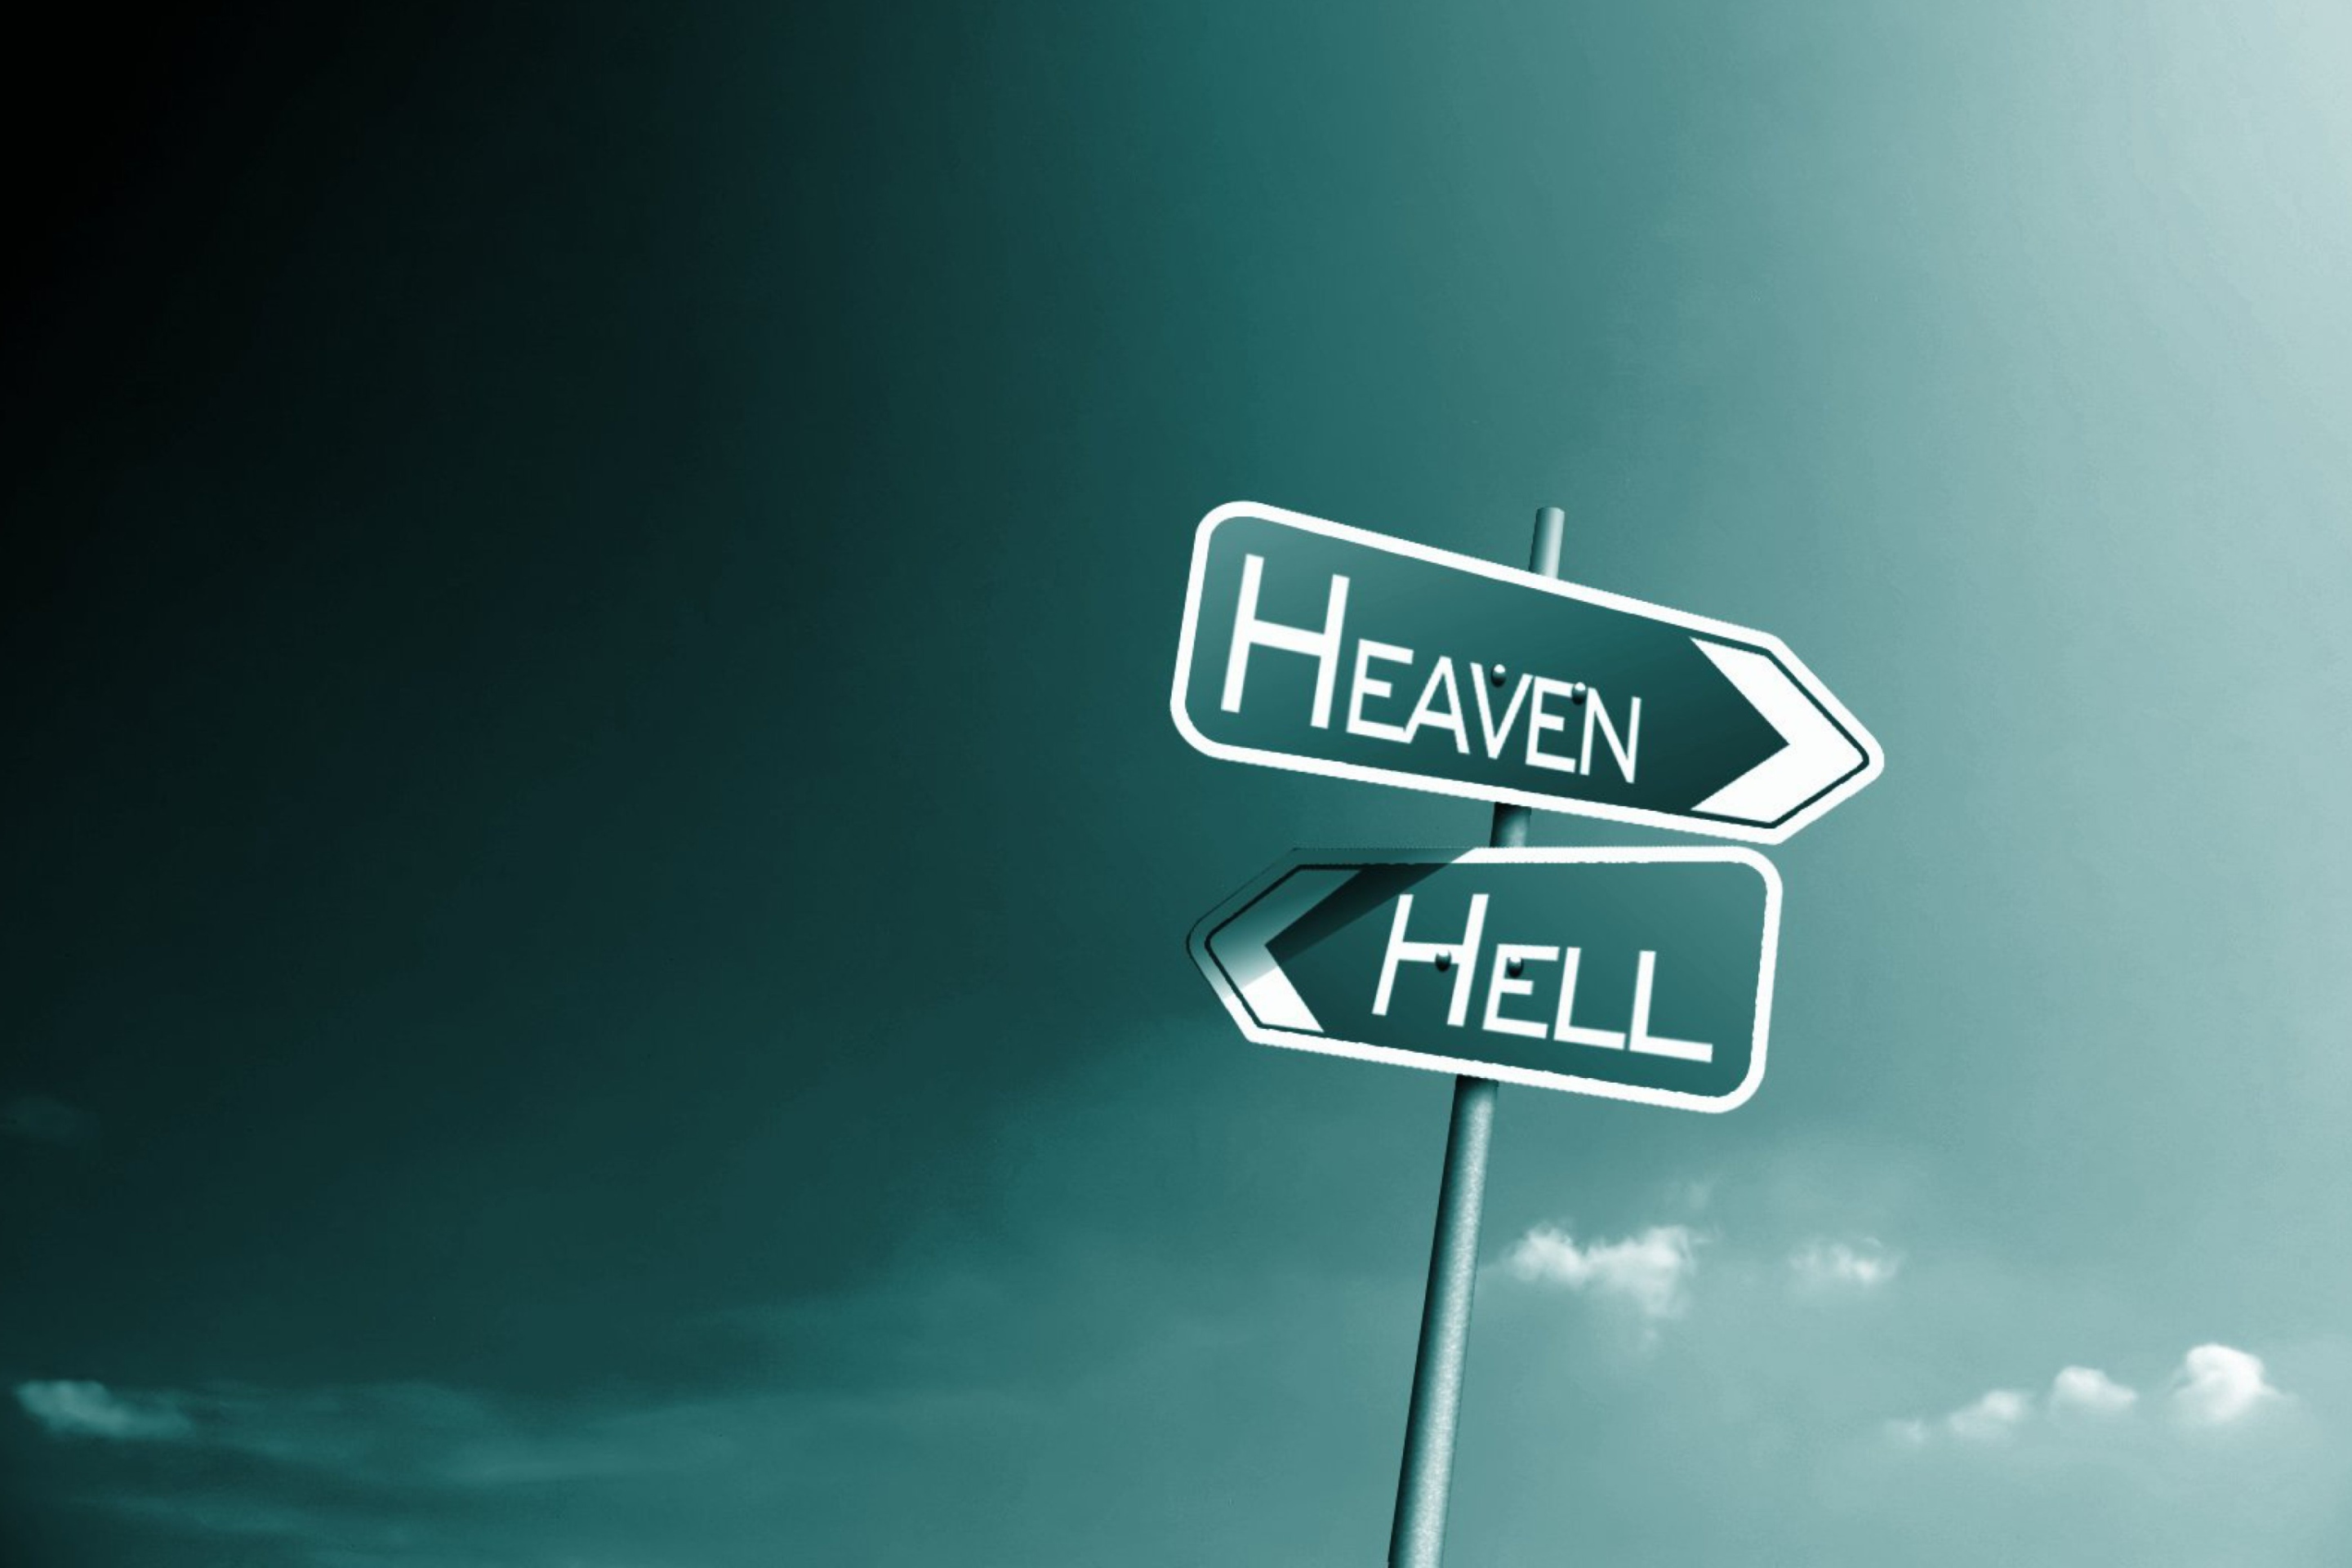 Das Heaven Hell Wallpaper 2880x1920